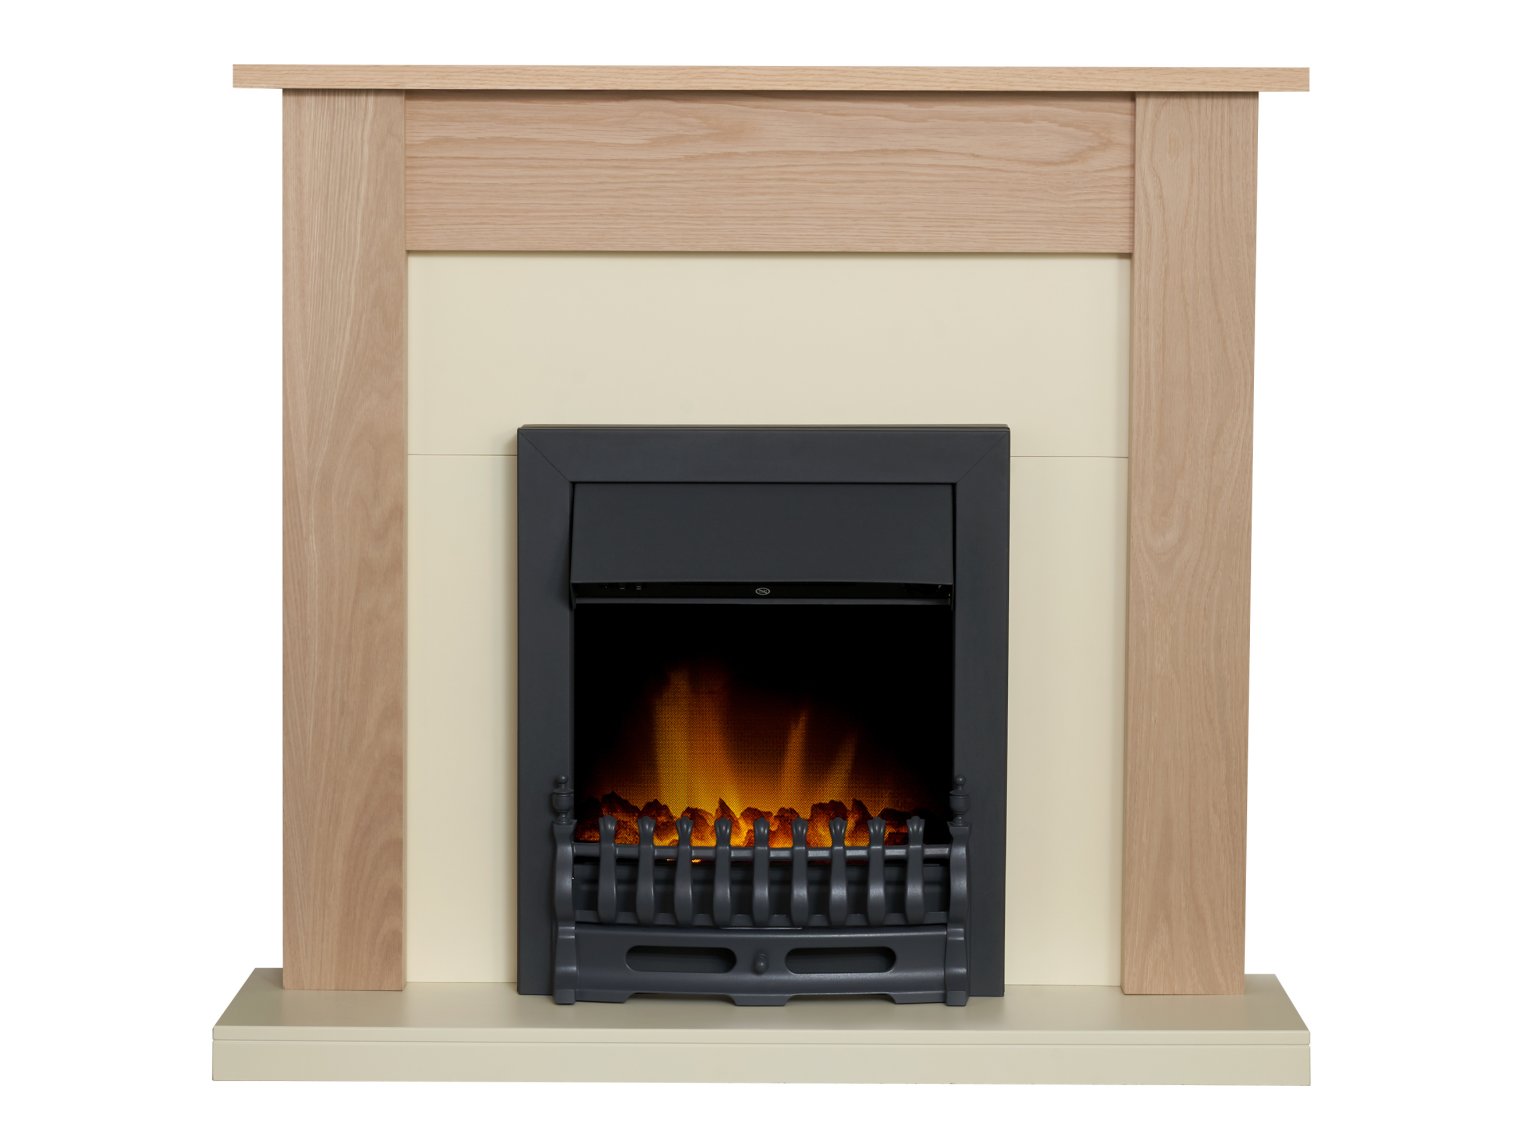 Adam Southwold Fireplace in Oak & Cream with Blenheim Electric Fire in Black, 43 Inch